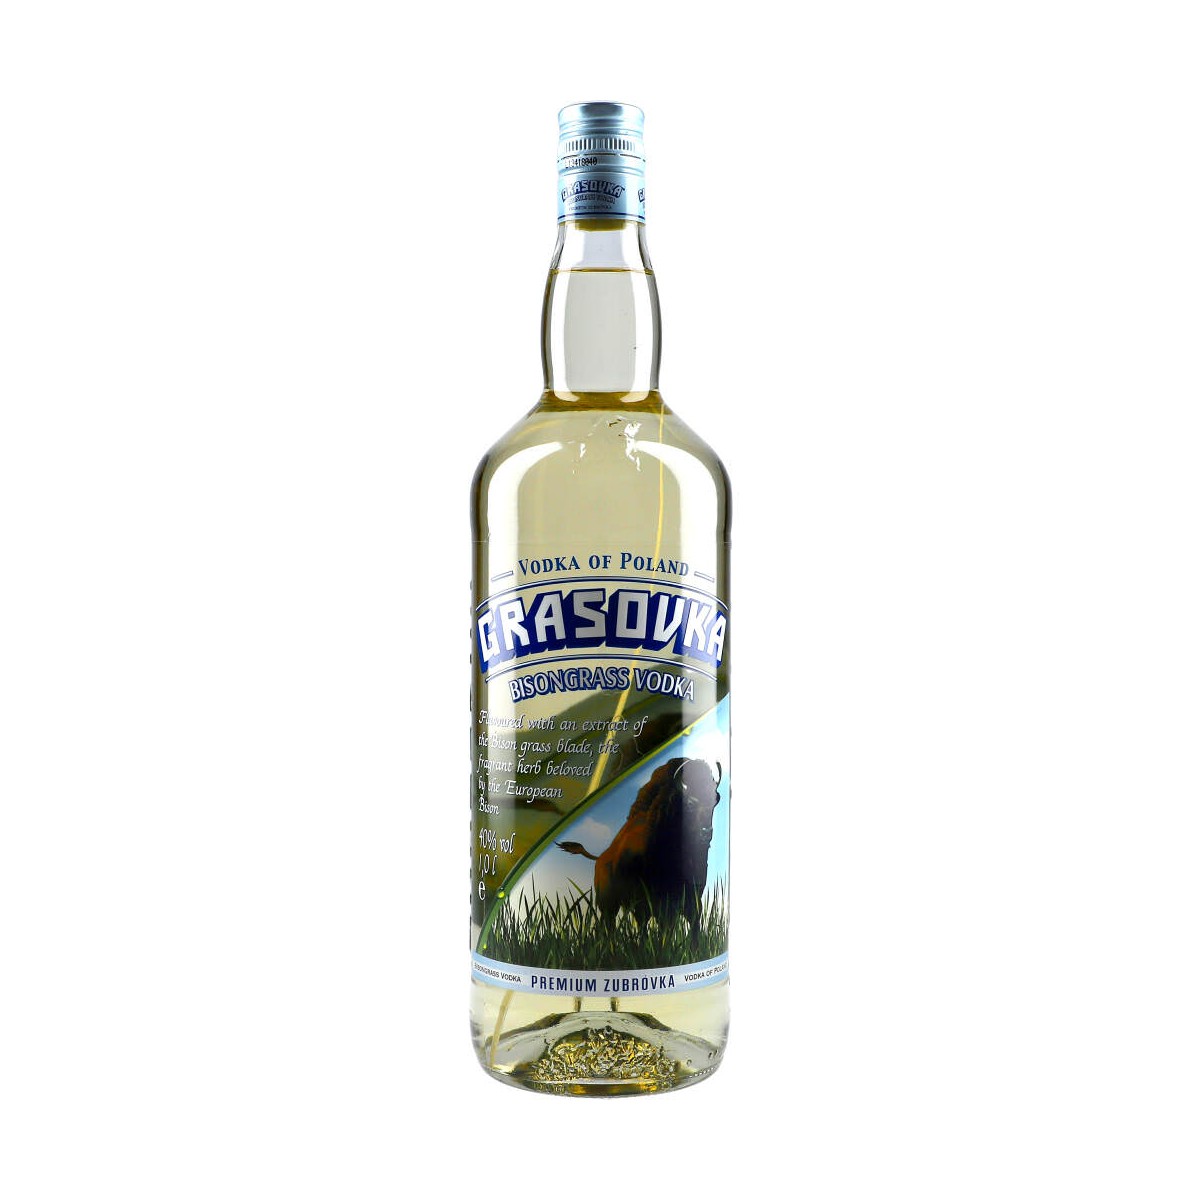 100cl Grasovka Bisongrass 38% Vodka